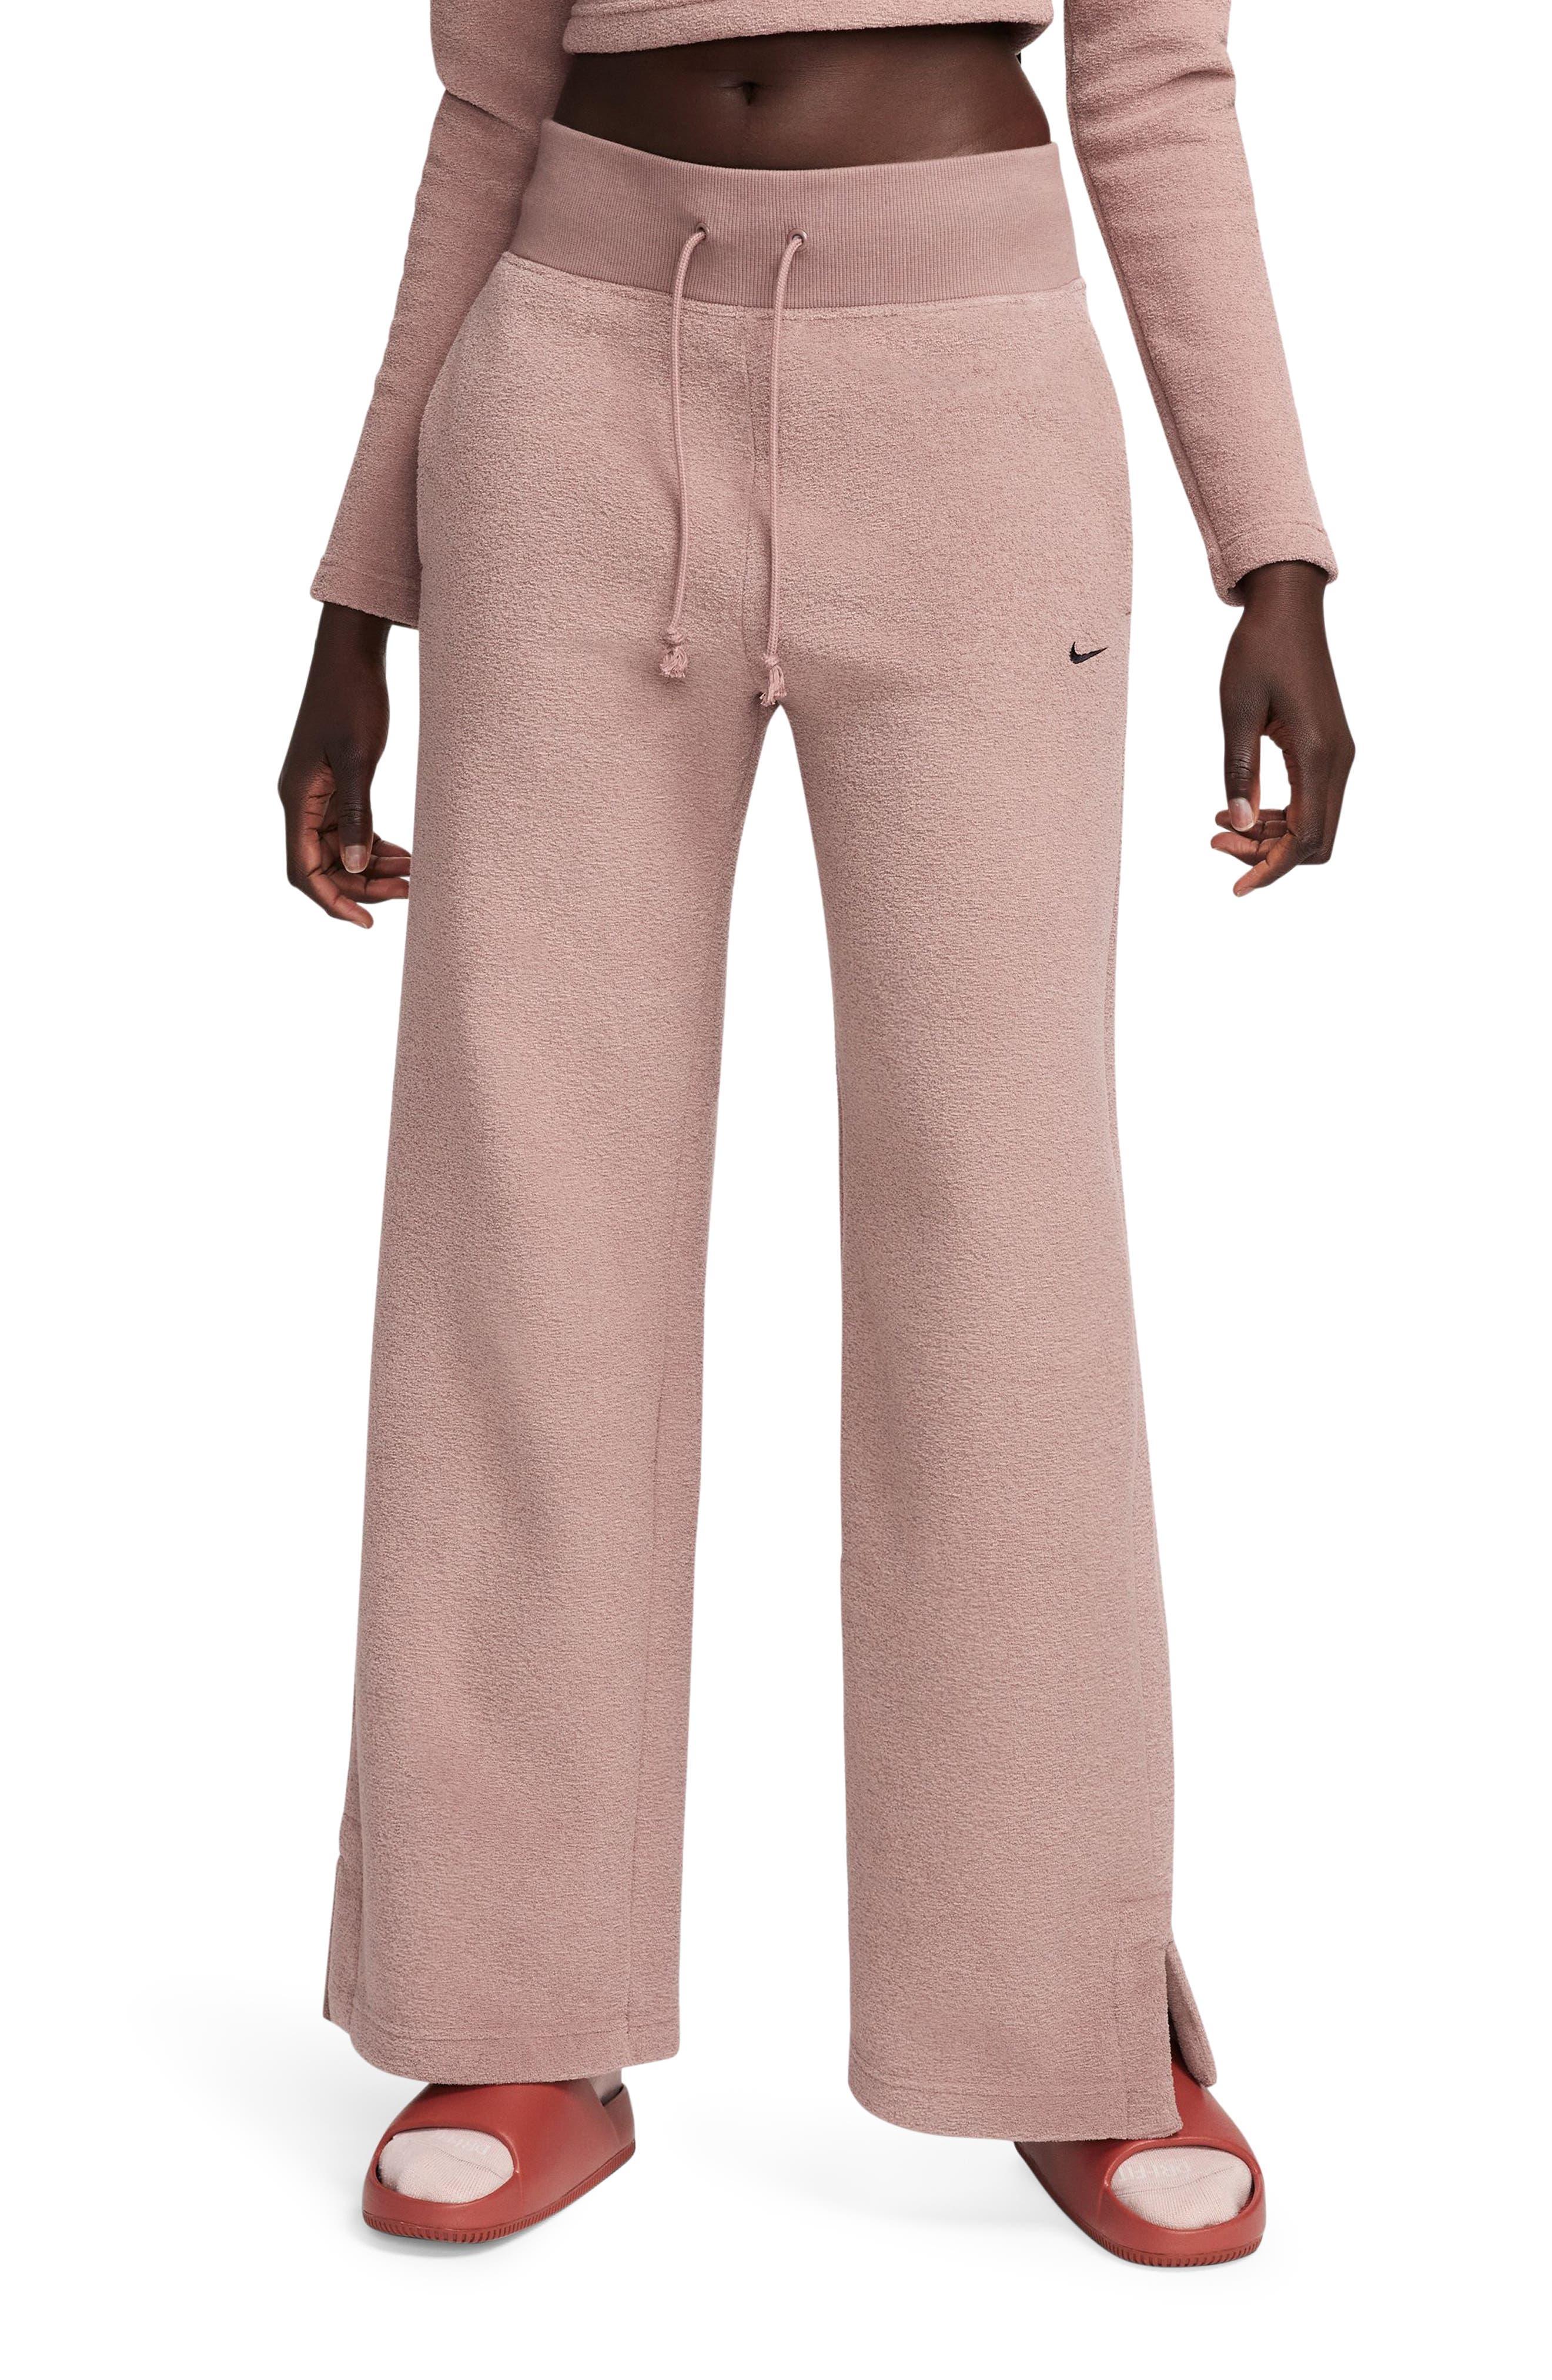 Nike Sportswear Phoenix Plush High Waist Wide Leg Fleece Pants in Pink